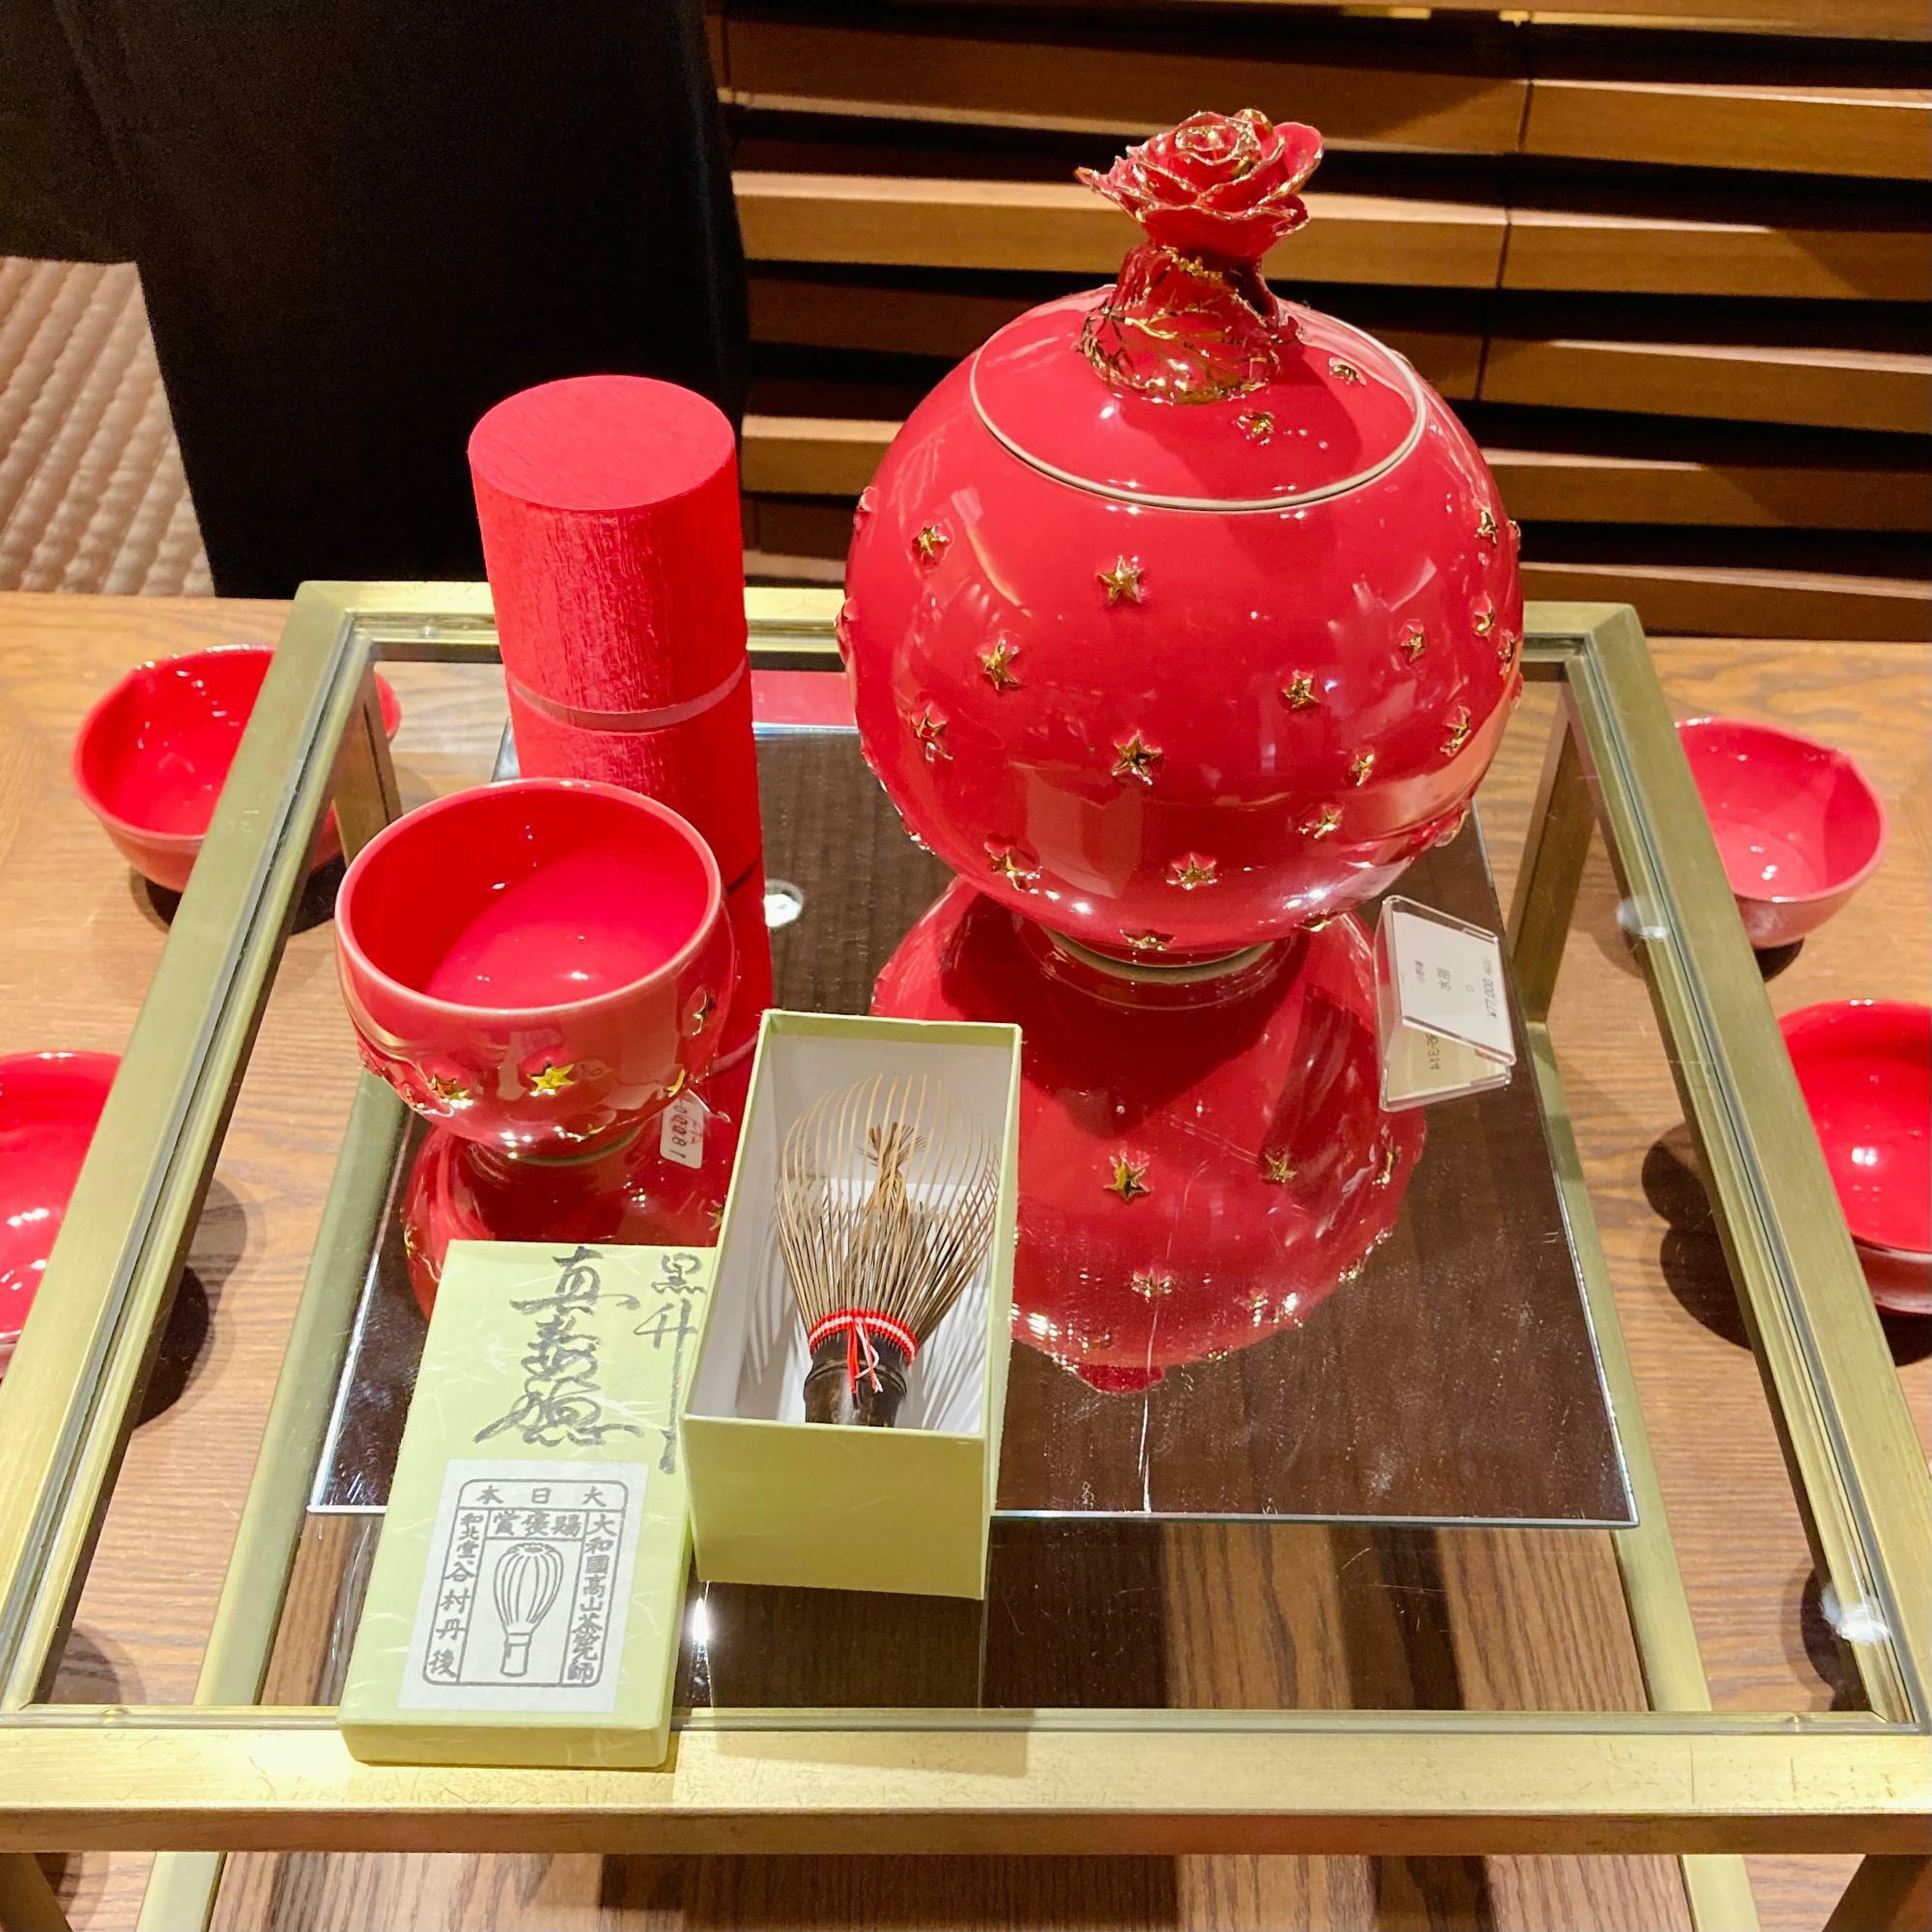 濃いピンク色の作品。色糸を使った茶せんは奈良の谷村丹後氏による高山茶せん